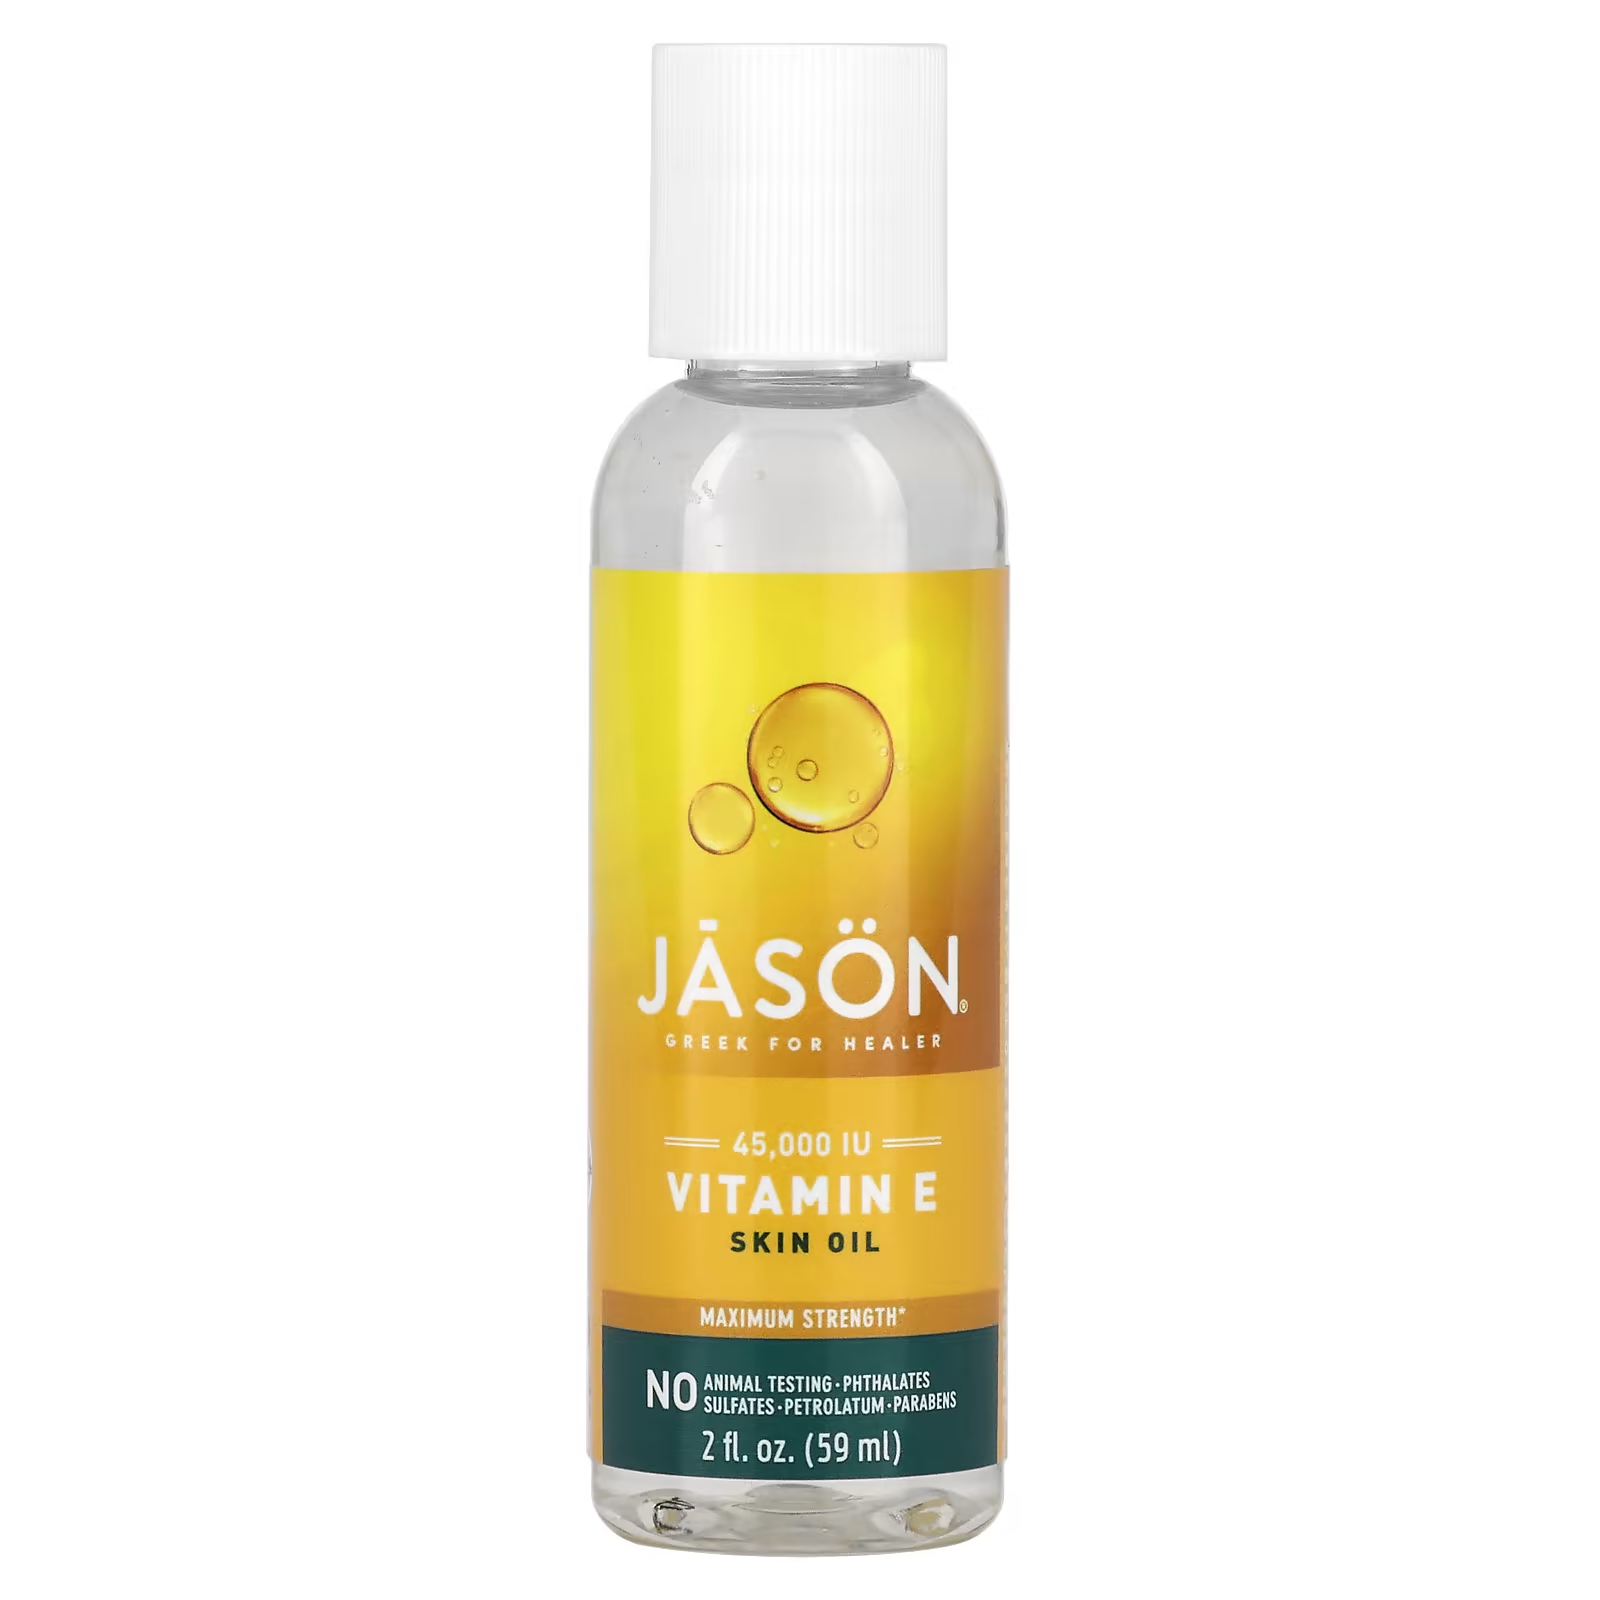 Натуральное масло для кожи Jason Natural с витамином Е, 59 мл jason natural чистое натуральное масло для кожи максимально эффективный витамин е 45 000 ме 59 мл 2 жидких унции